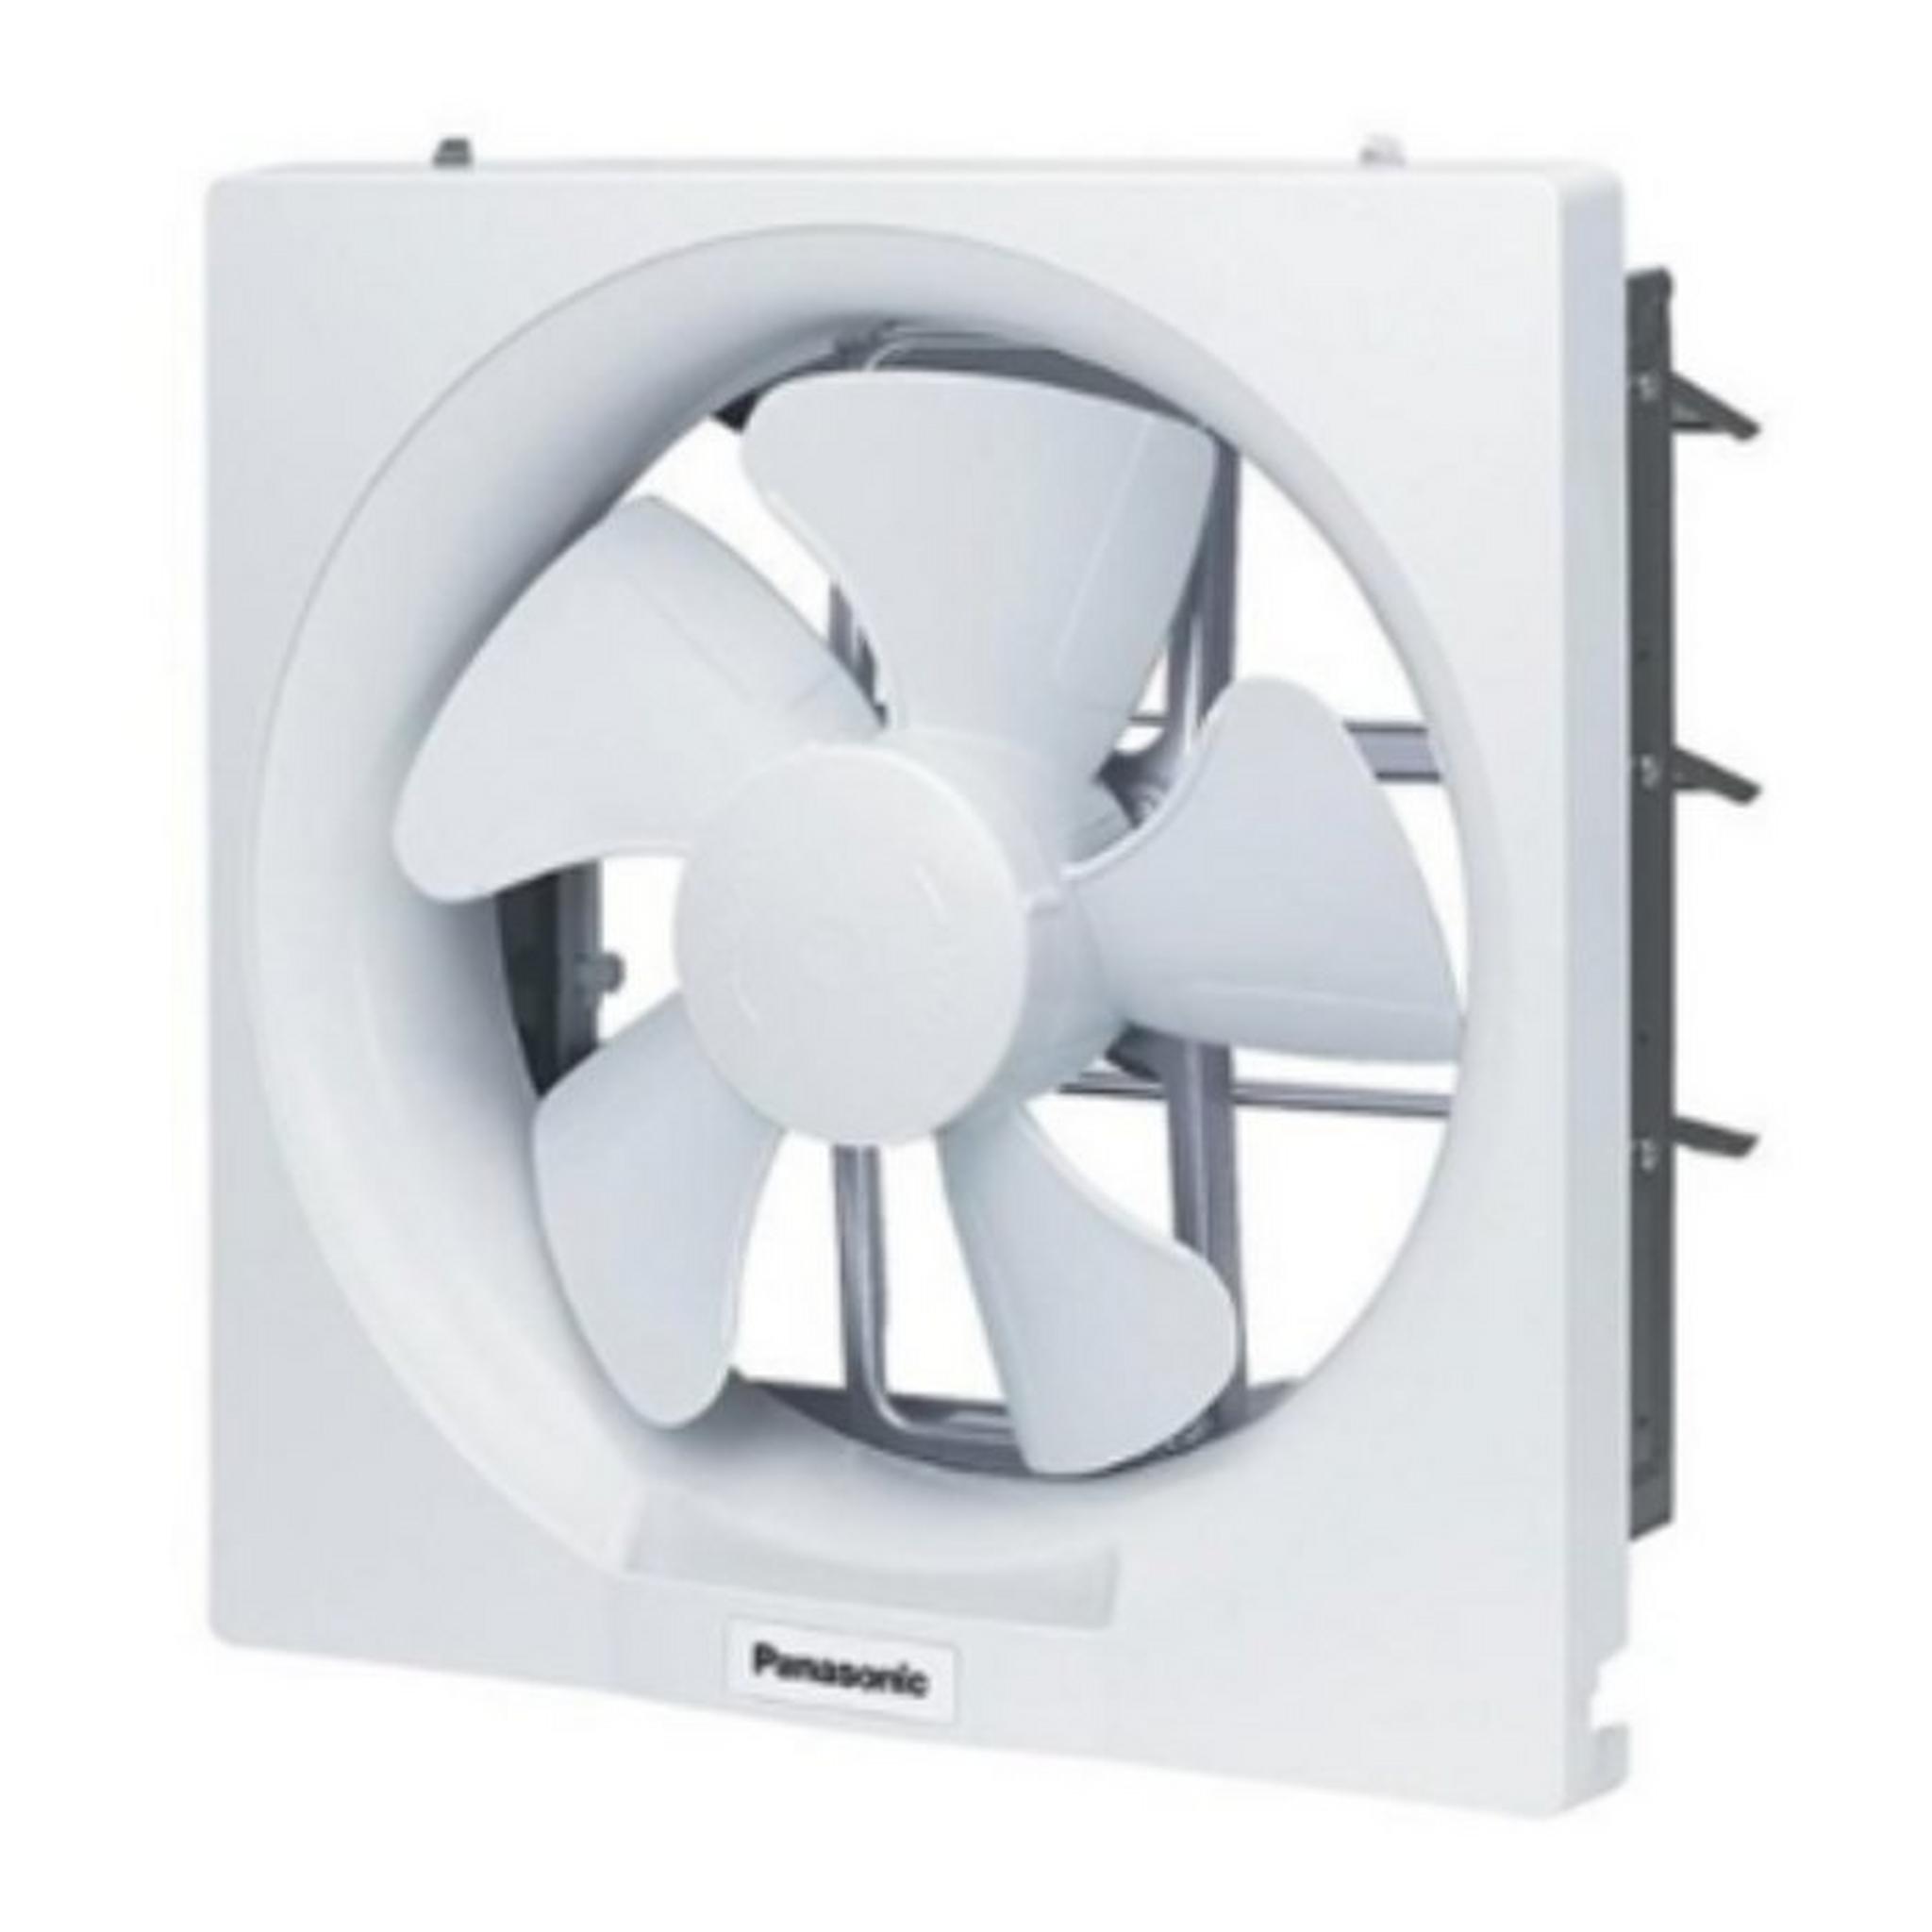 Panasonic 10 Inch Ventilating Fan (FV-25AU9TNAMG)